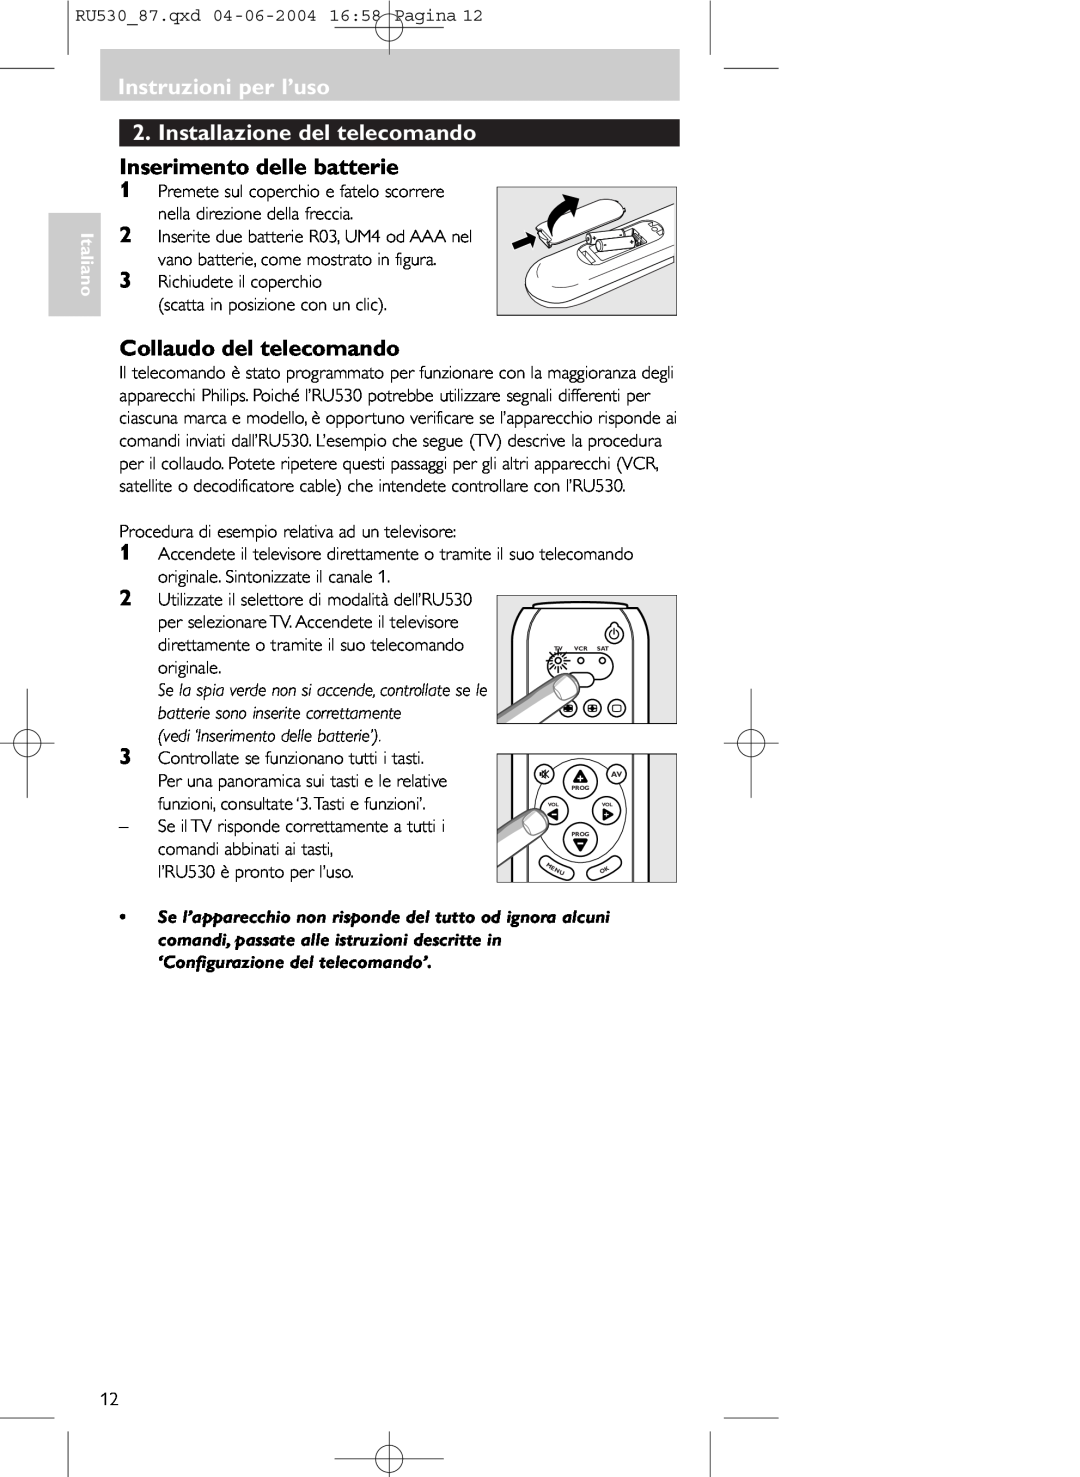 Philips SBC RU 530/87U manual Installazione del telecomando, Inserimento delle batterie, Collaudo del telecomando, Italiano 